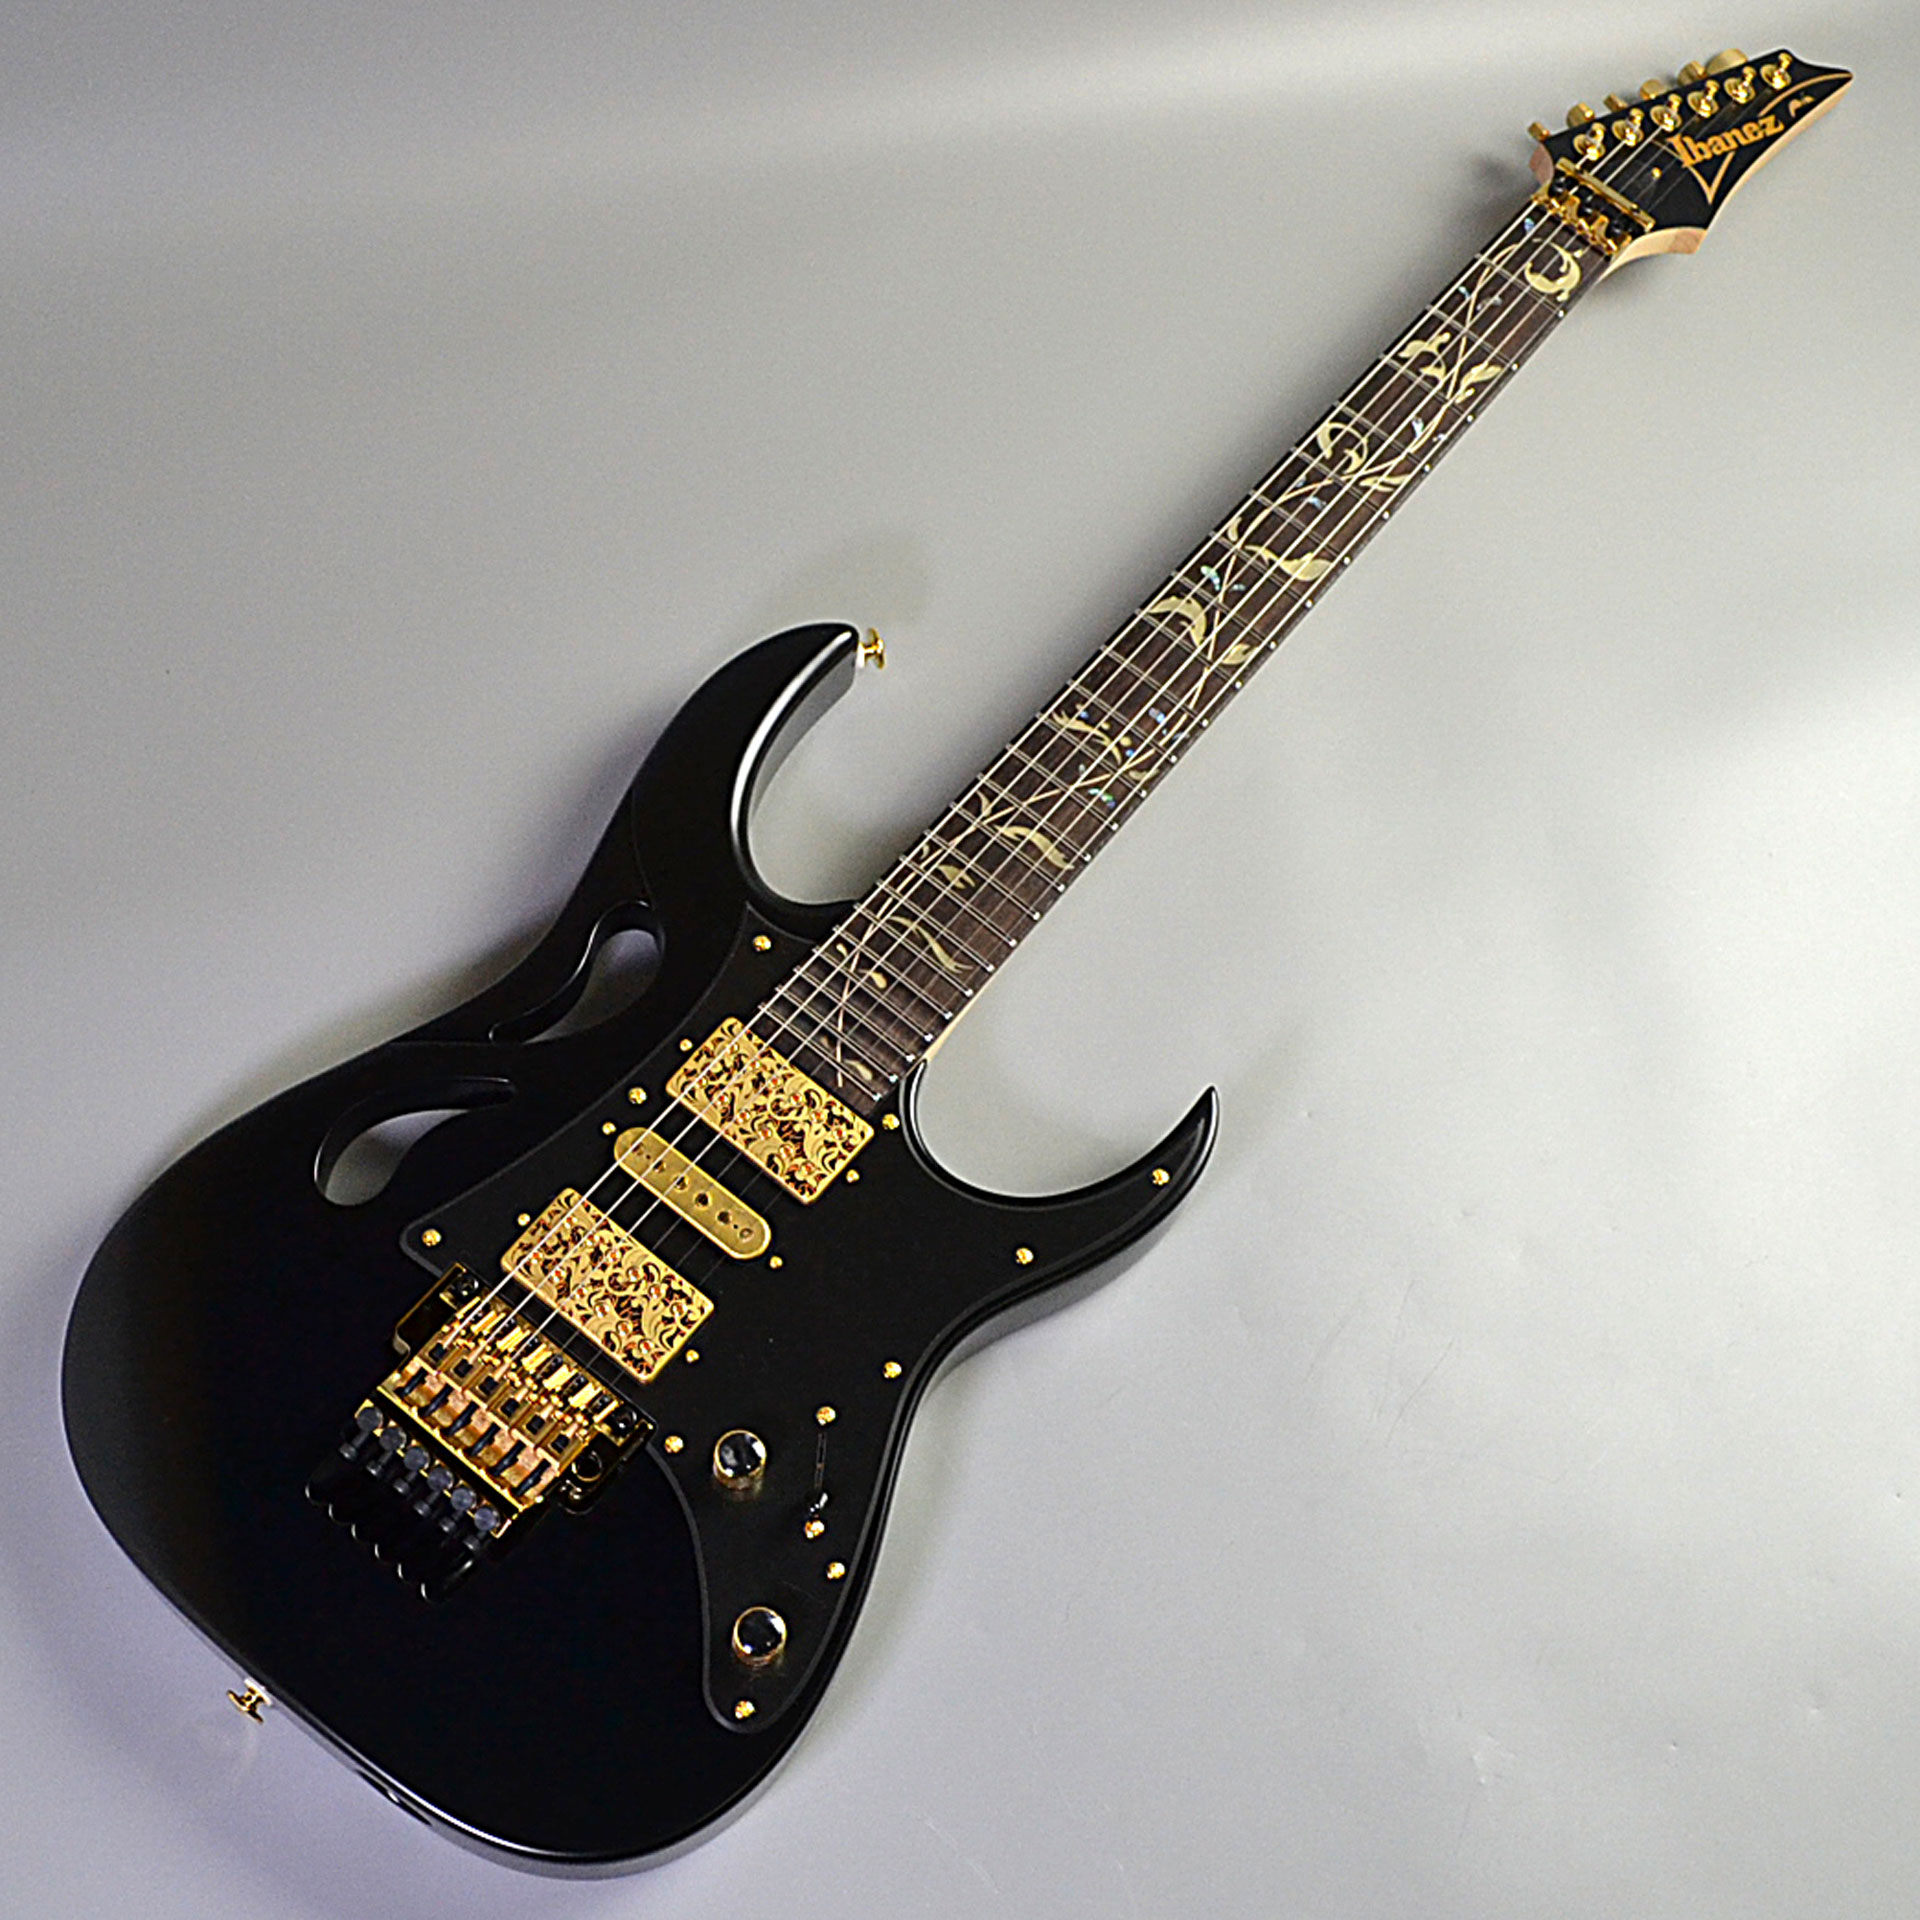 レジェンドギタリスト、スティーブ・ヴァイ氏のNewシグネイチャーギター「PIA3761」が入荷しました。今回はOnyx Blackのカラーが入荷しました。 ・PIA Blossom inlayJEMでトレード・マークだったツリー・オブ・ライフ・インレイは言うに及ばず、スティーヴ自身のアートにしばしば […]